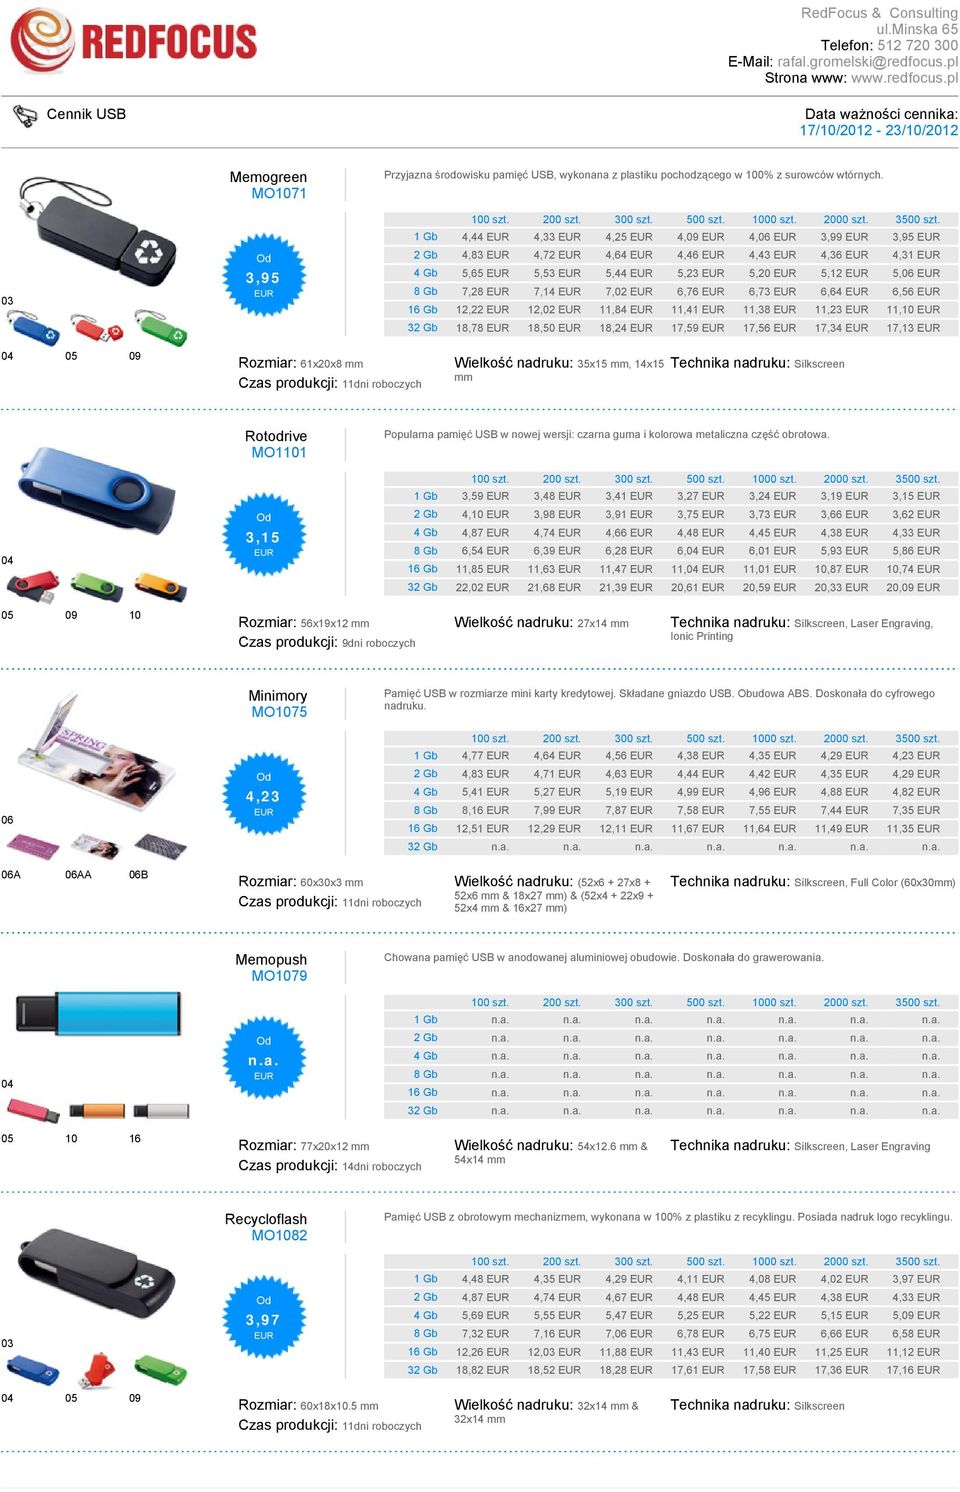 11,23 11,10 32 Gb 18,78 18,50 18,24 17,59 17,56 17,34 17,13 04 05 09 Rozmiar: 61x20x8 mm Wielkość nadruku: 35x15 mm, 14x15 mm 04 Rotodrive MO1101 3,15 Popularna pamięć USB w nowej wersji: czarna guma